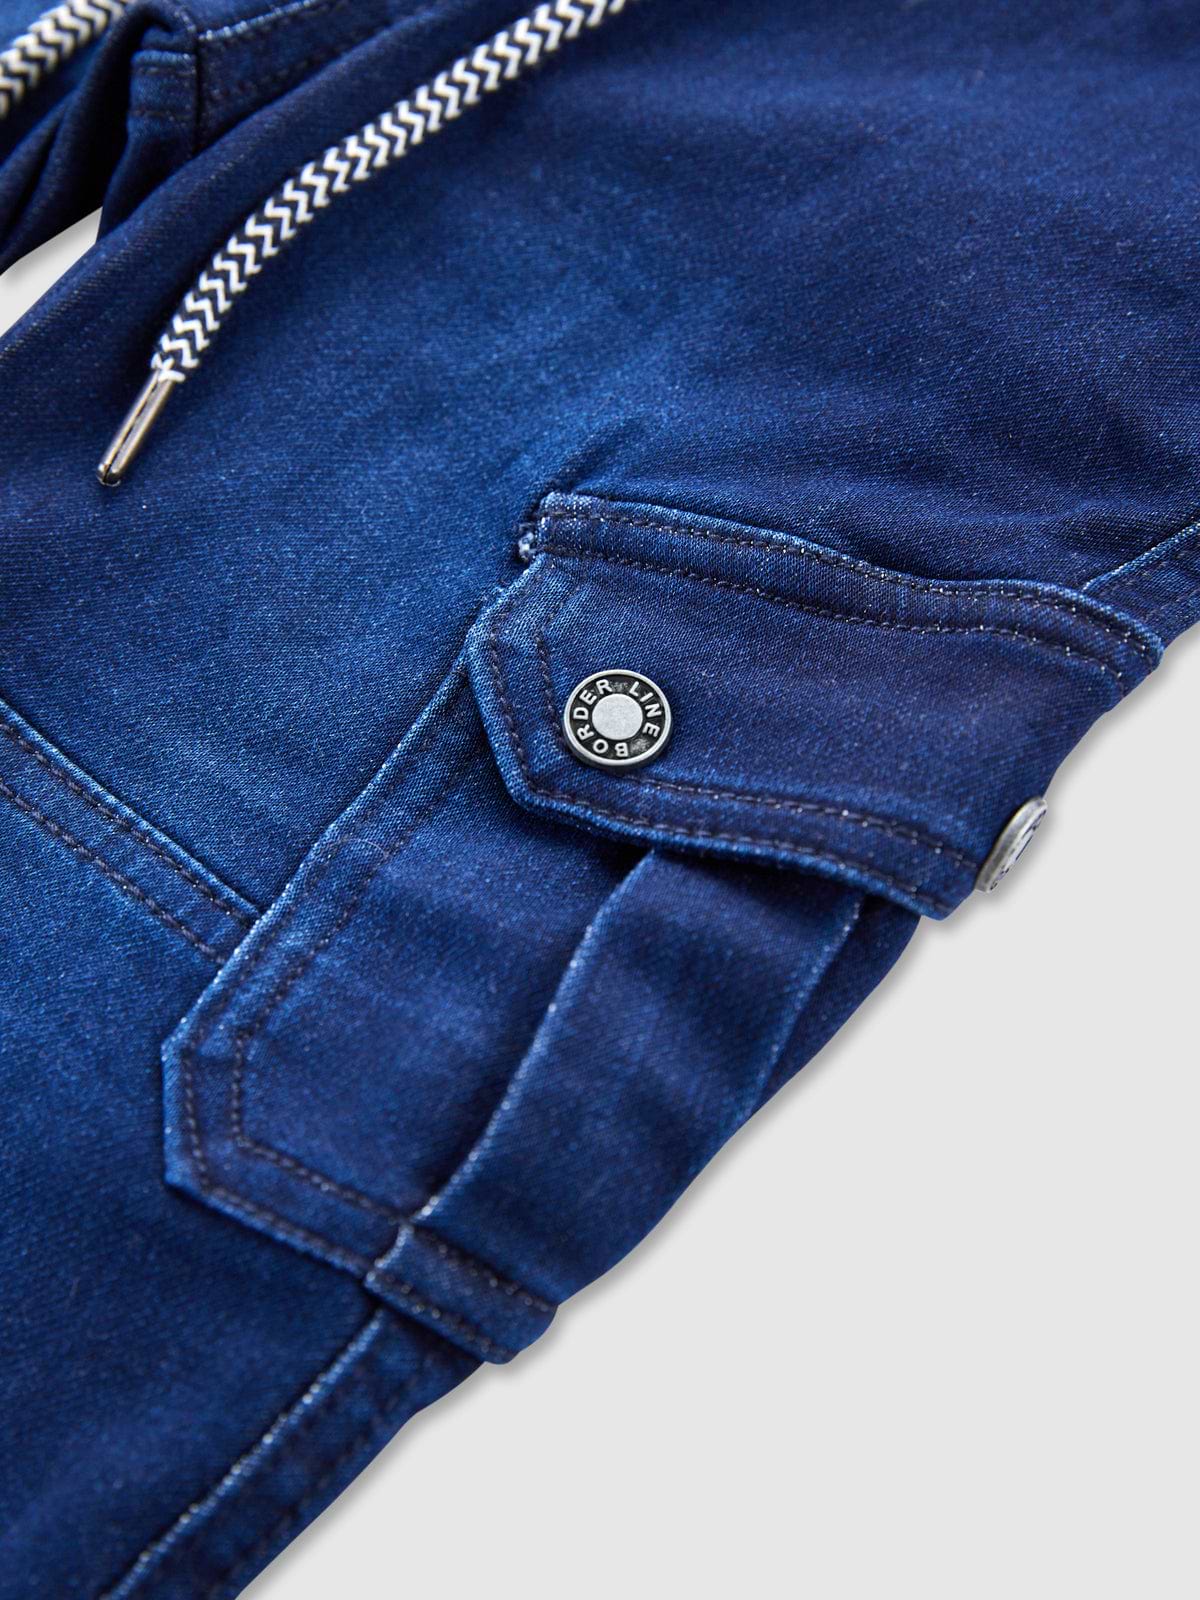 מכנסי ג'ינס בדוגמת דגמ"ח / תינוקות וילדים- Borderline|בורדרליין